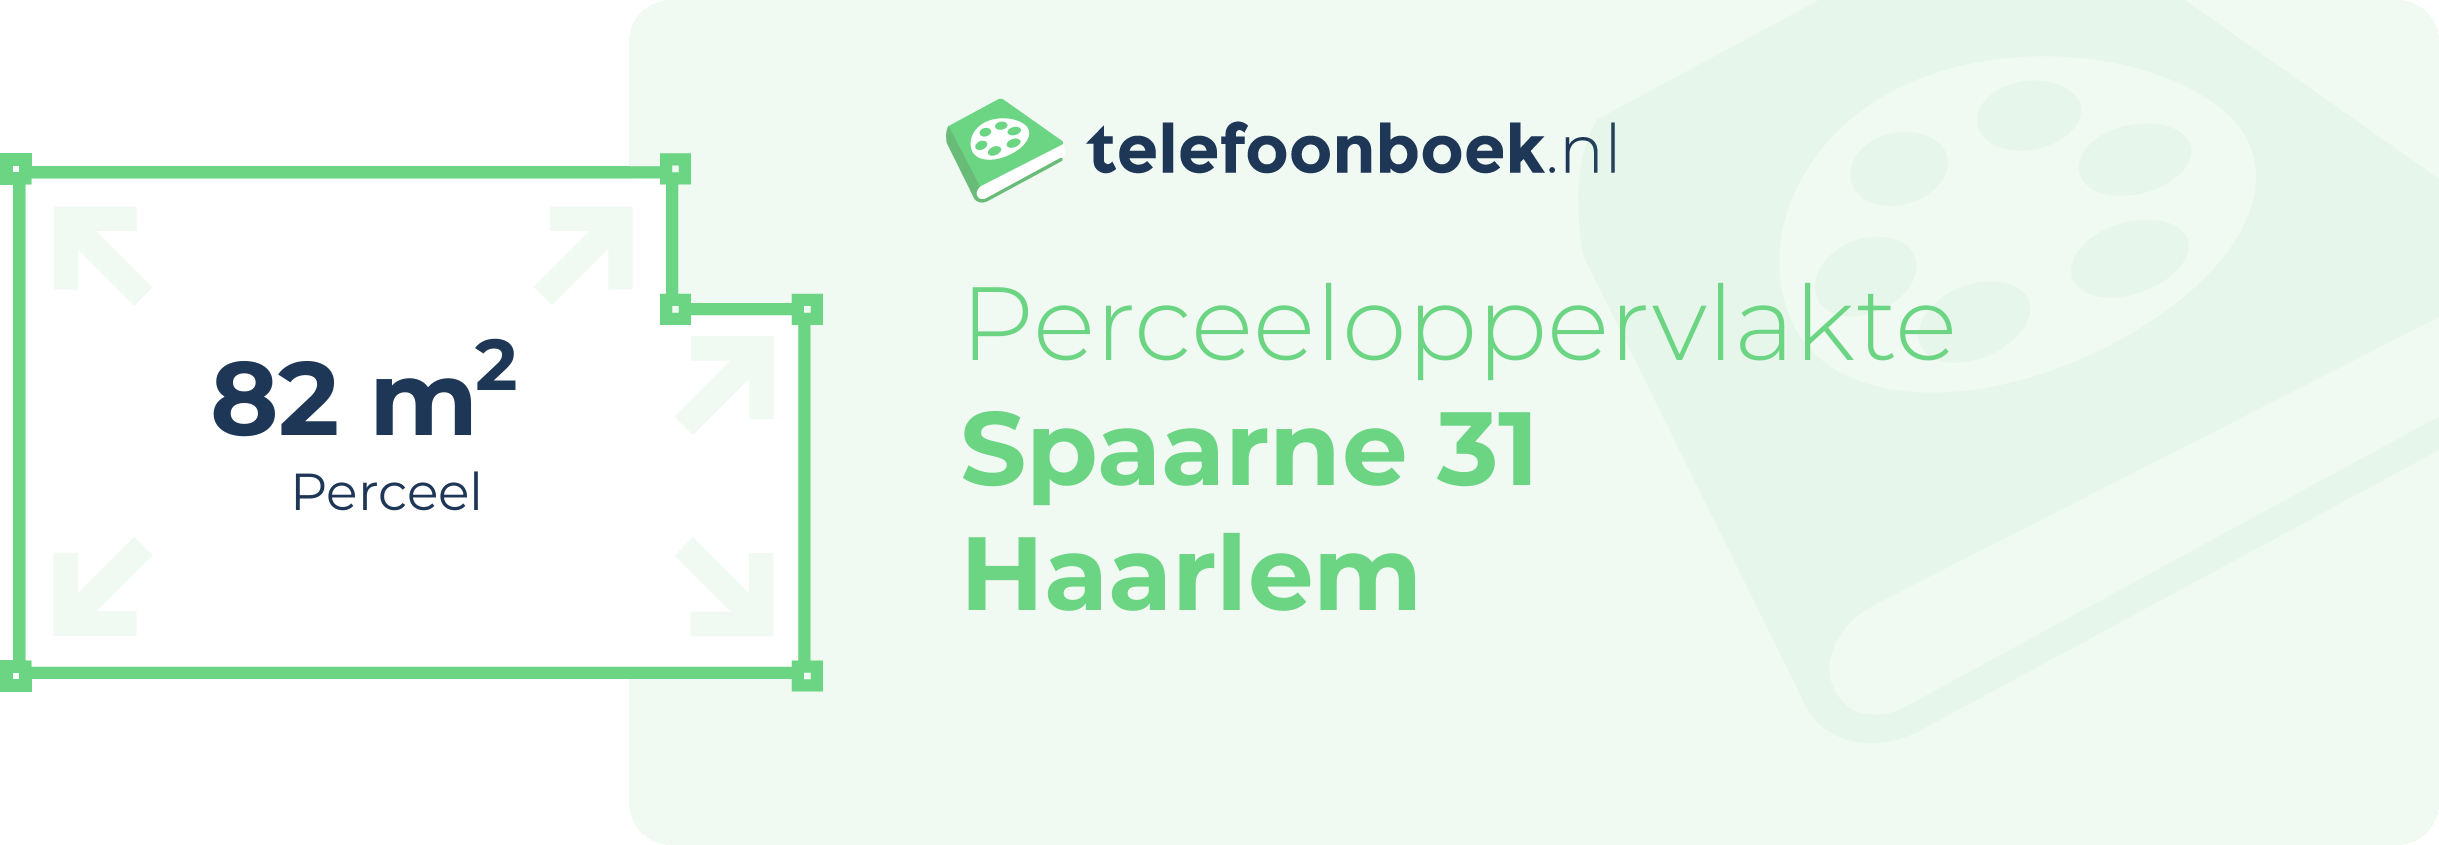 Perceeloppervlakte Spaarne 31 Haarlem